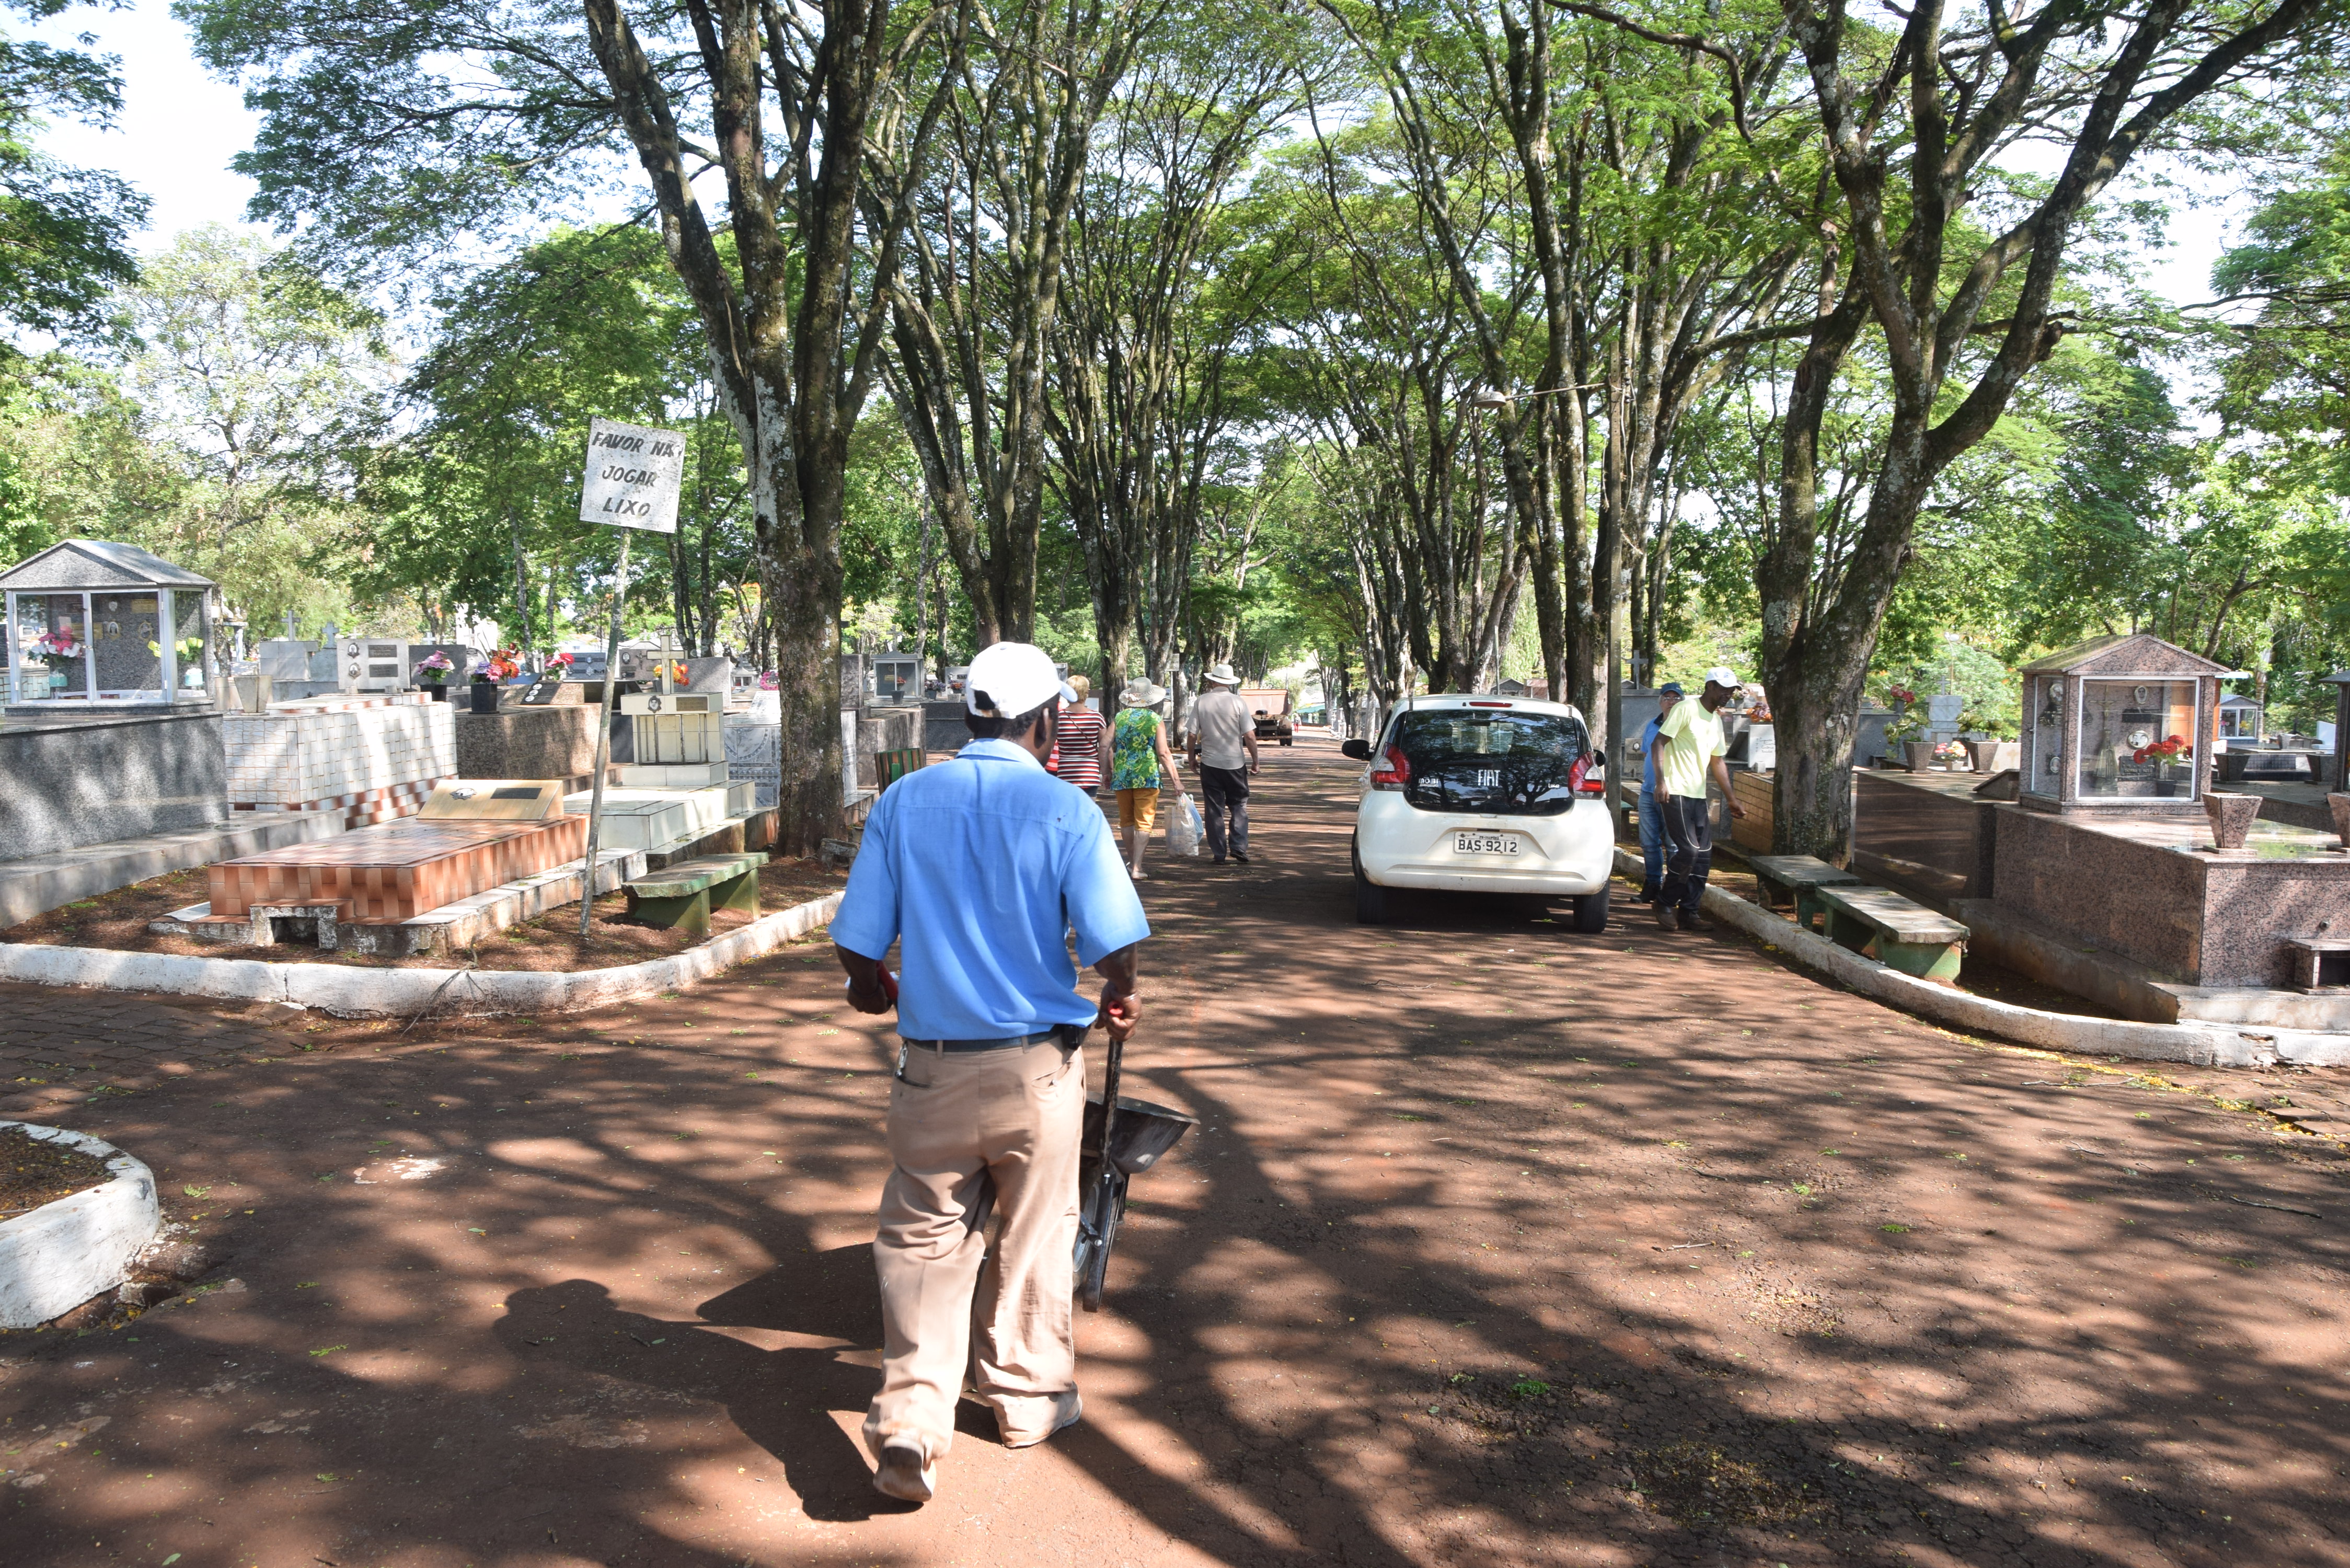 O ladrão fugiu pelo portão principal do cemitério levando o celular da vítima. (Foto: Ivan Maldonado)